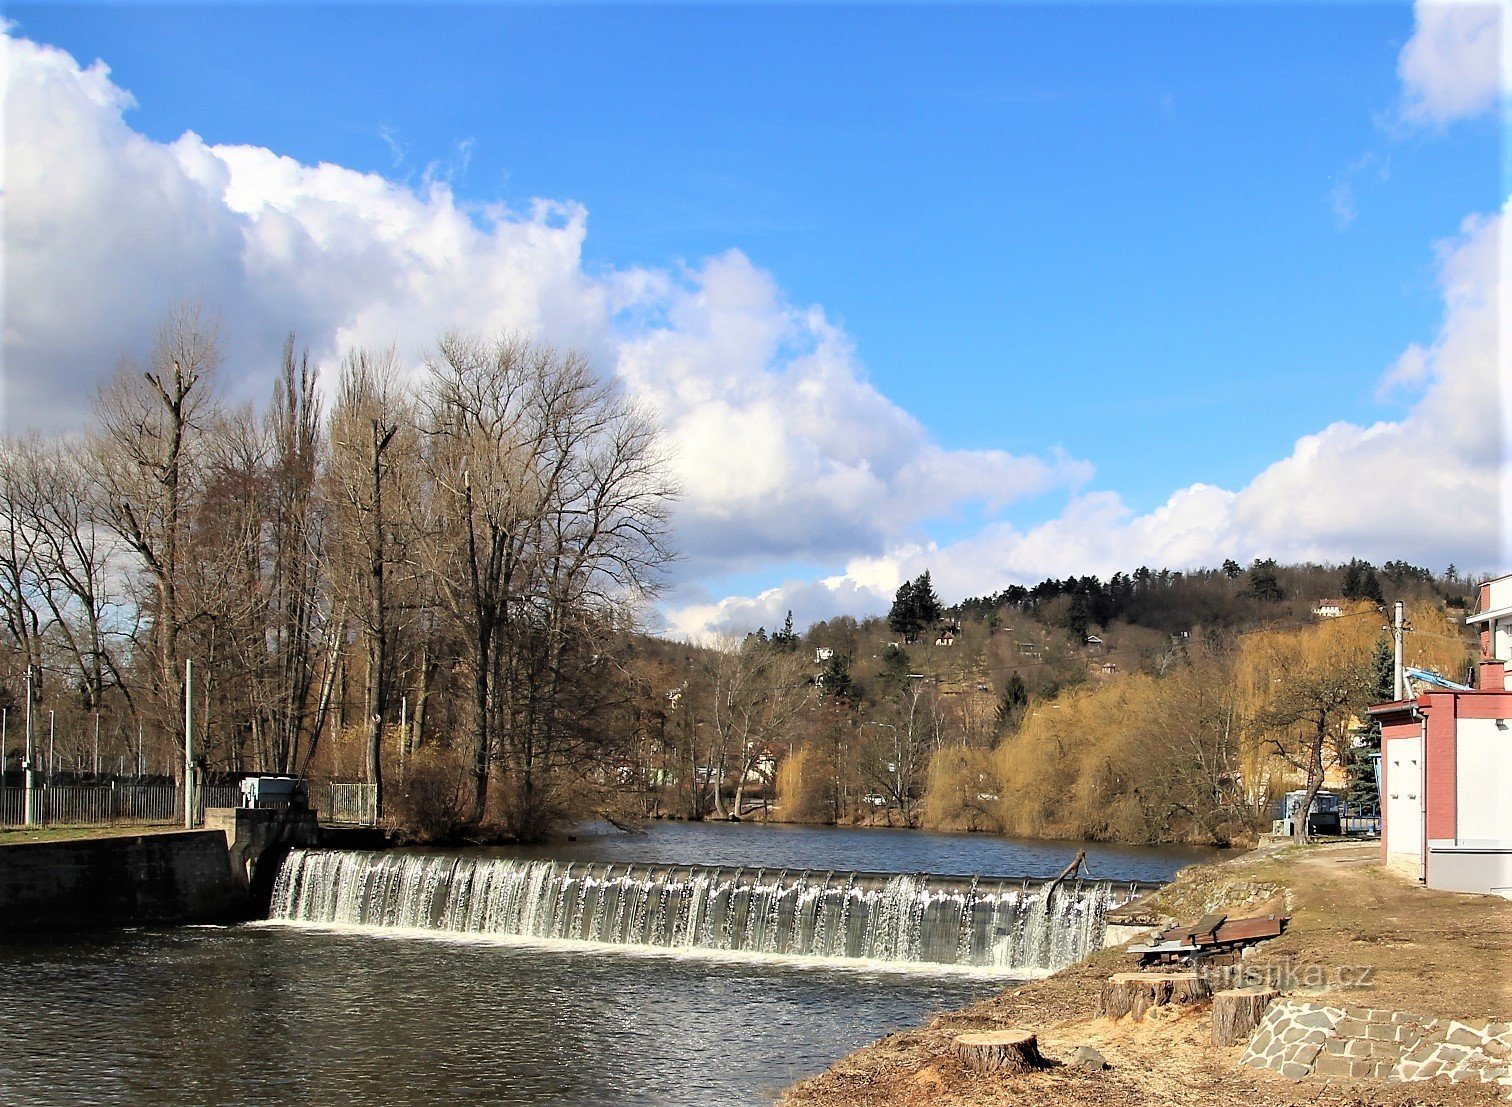 イベントの場所は、スヴラトカ川のほとり近くのコミン ダムの上にあります。